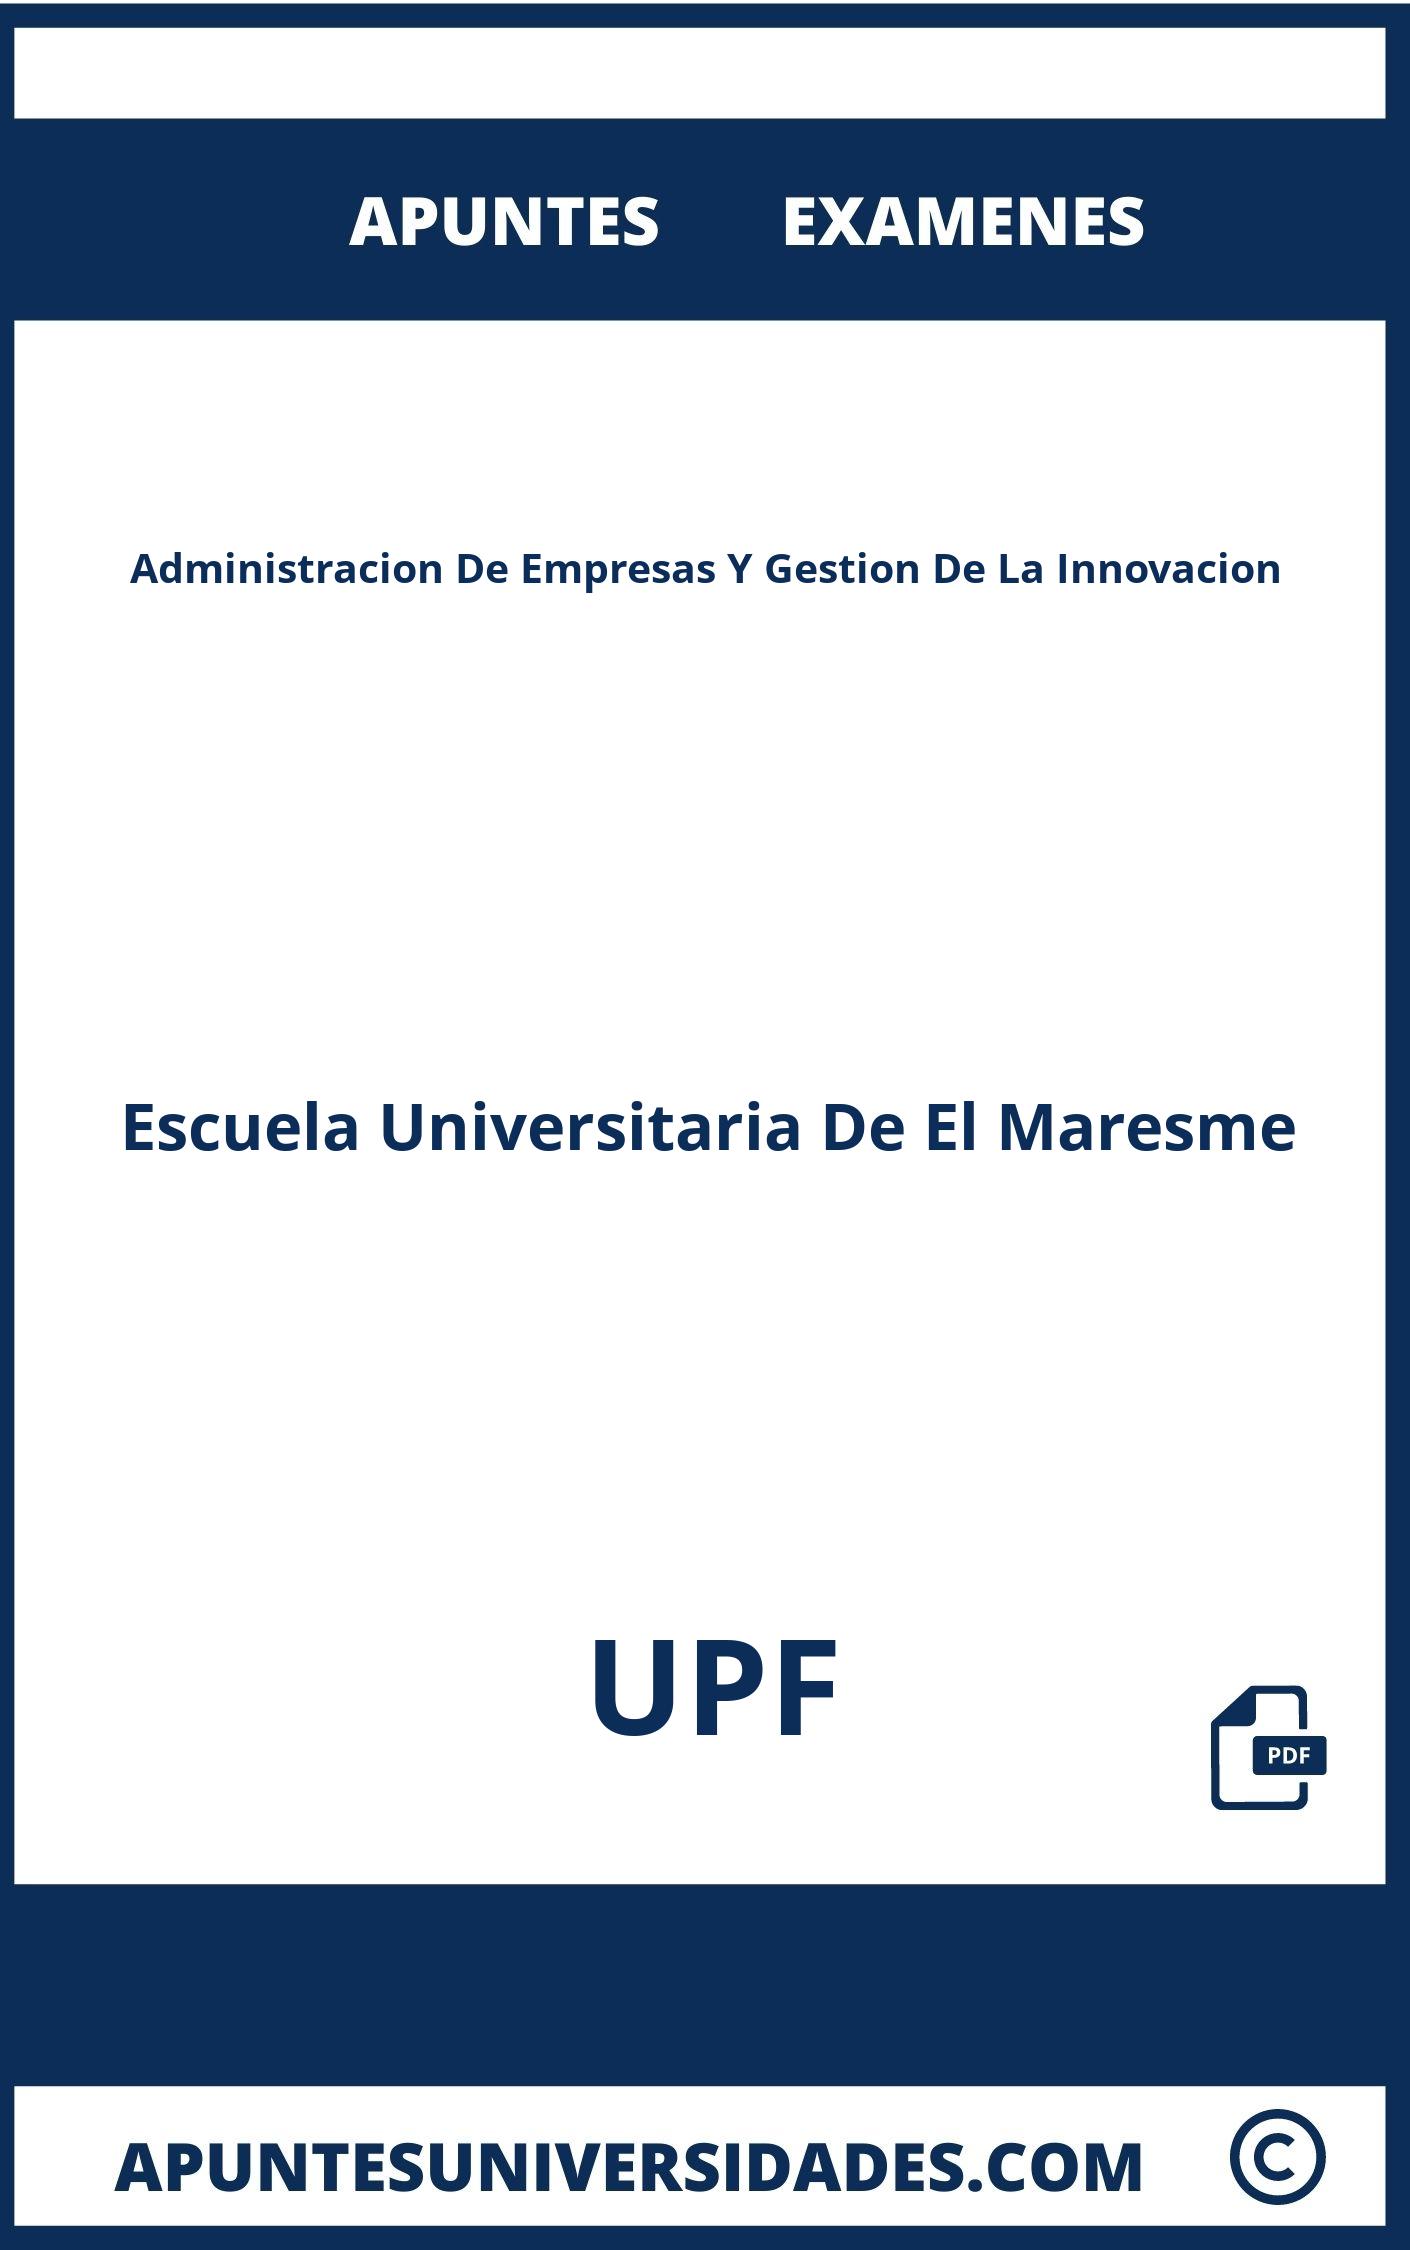 Apuntes Administracion De Empresas Y Gestion De La Innovacion UPF y Examenes